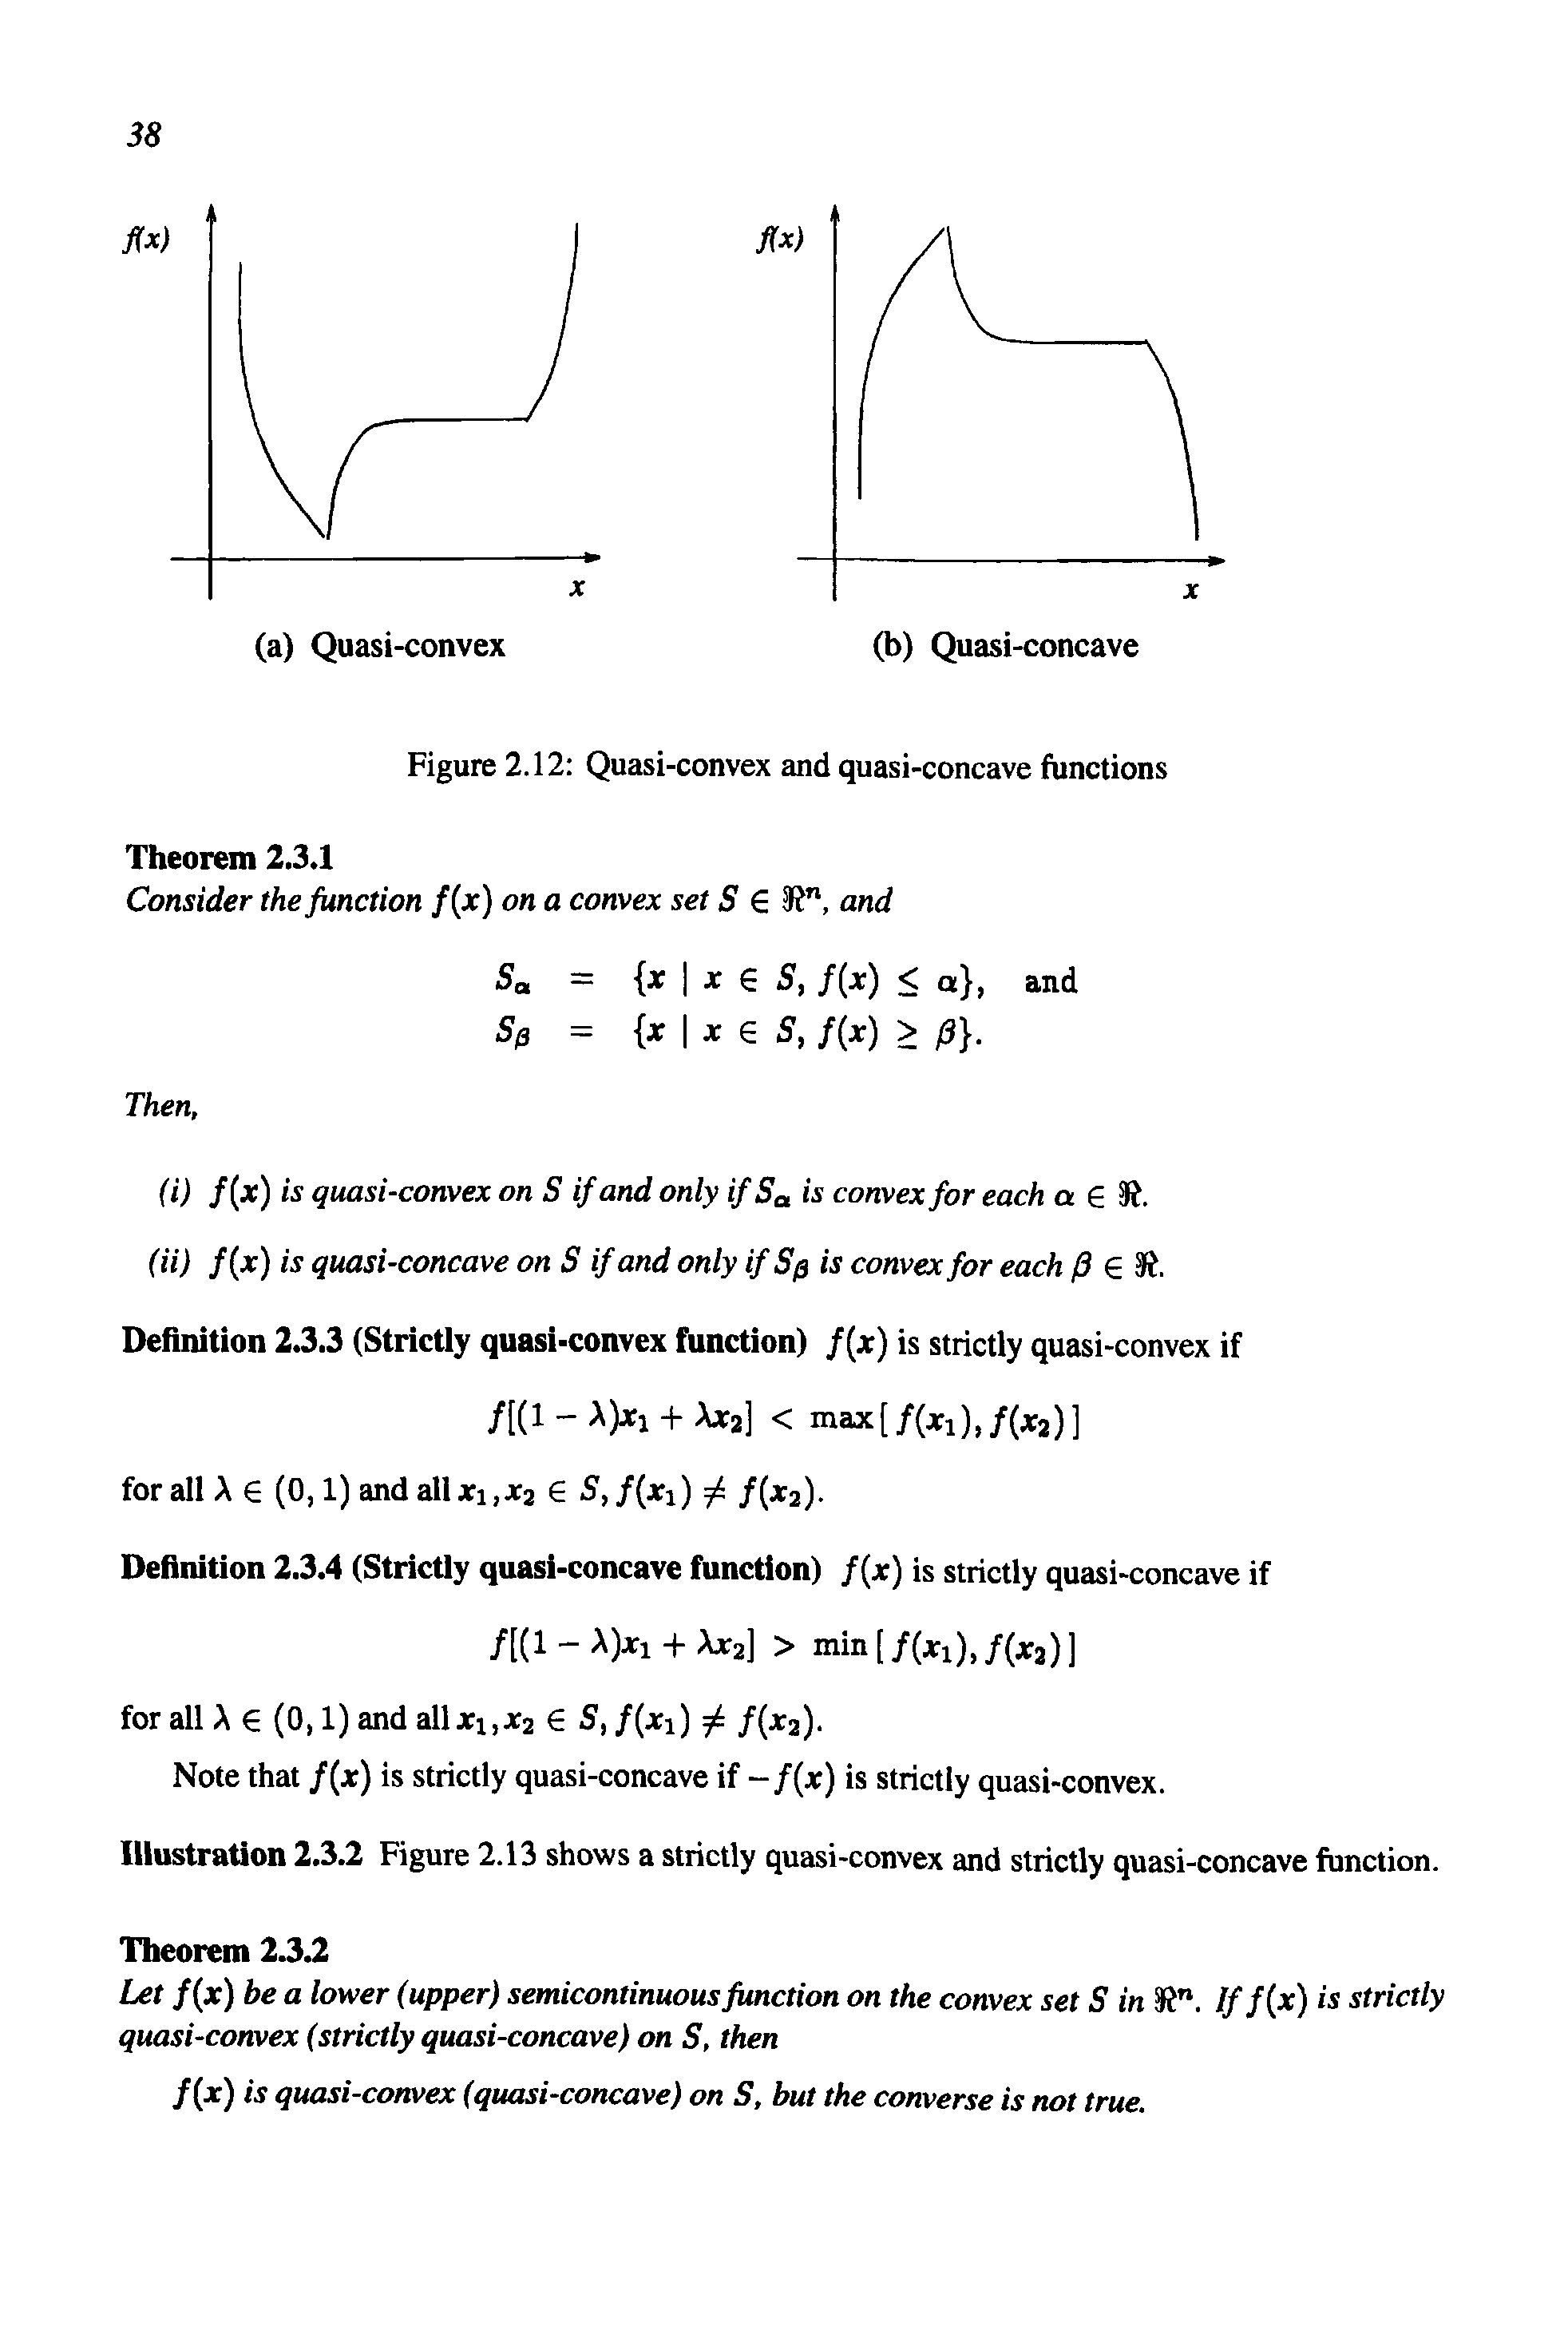 Figure 2.12 Quasi-convex and quasi-concave functions...